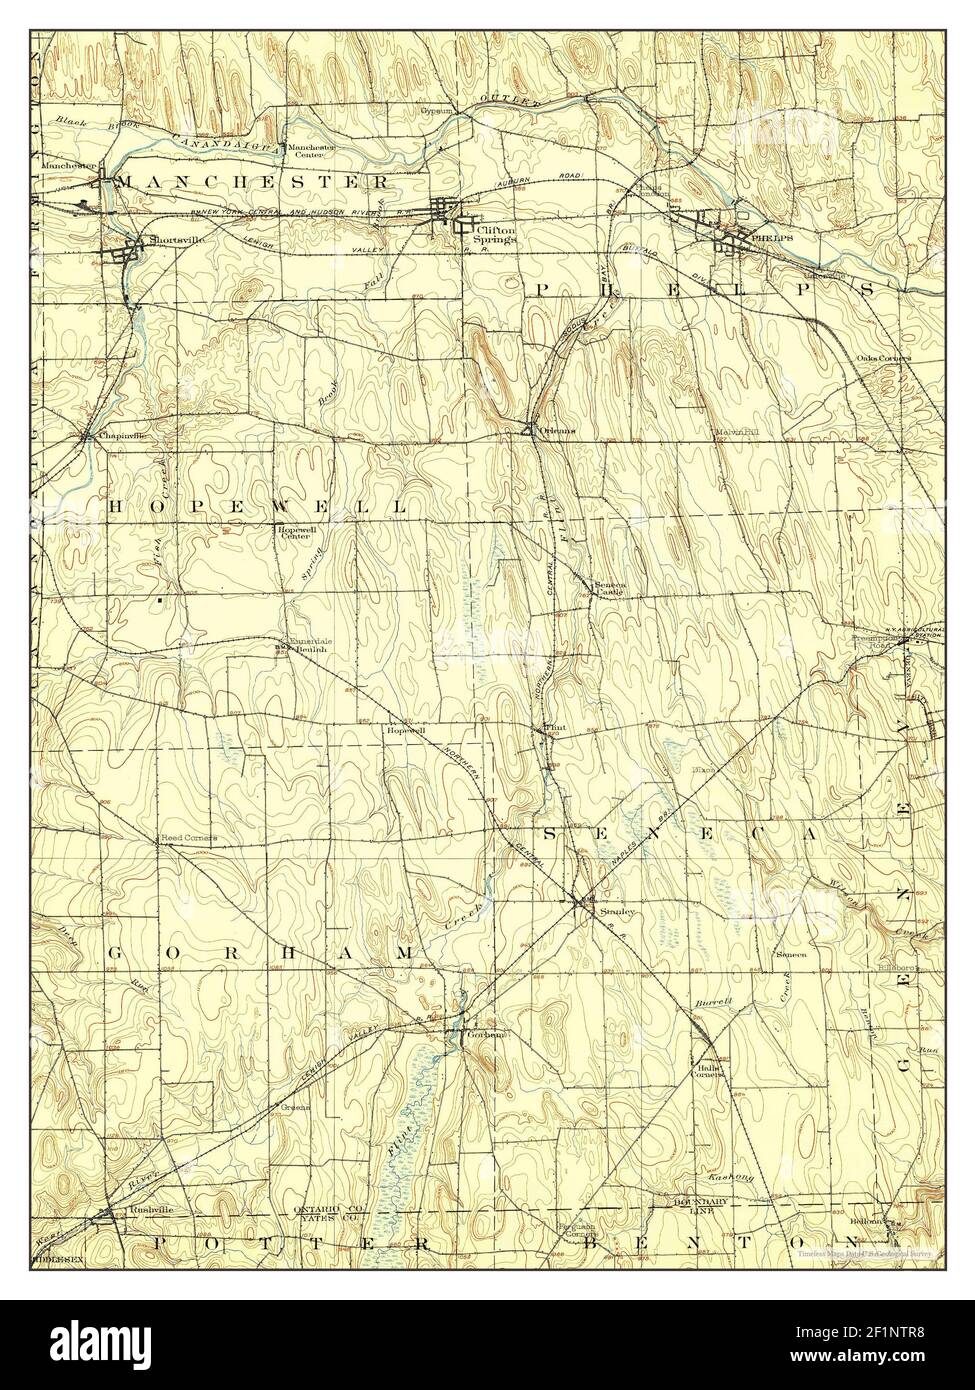 Phelps, New York, Karte 1902, 1:62500, Vereinigte Staaten von Amerika von Timeless Maps, Daten U.S. Geological Survey Stockfoto